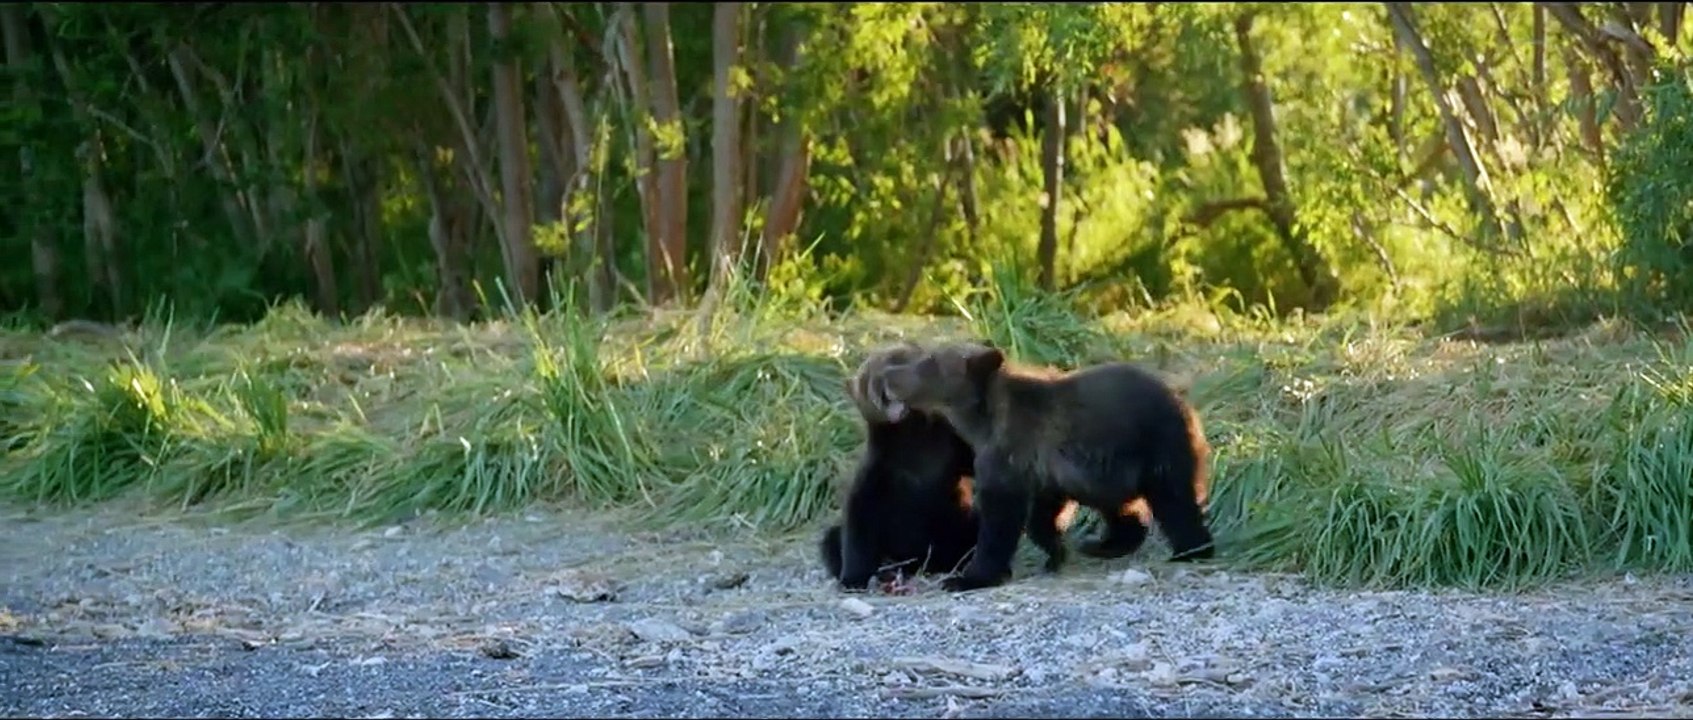 Im Land der Bären Trailer DF